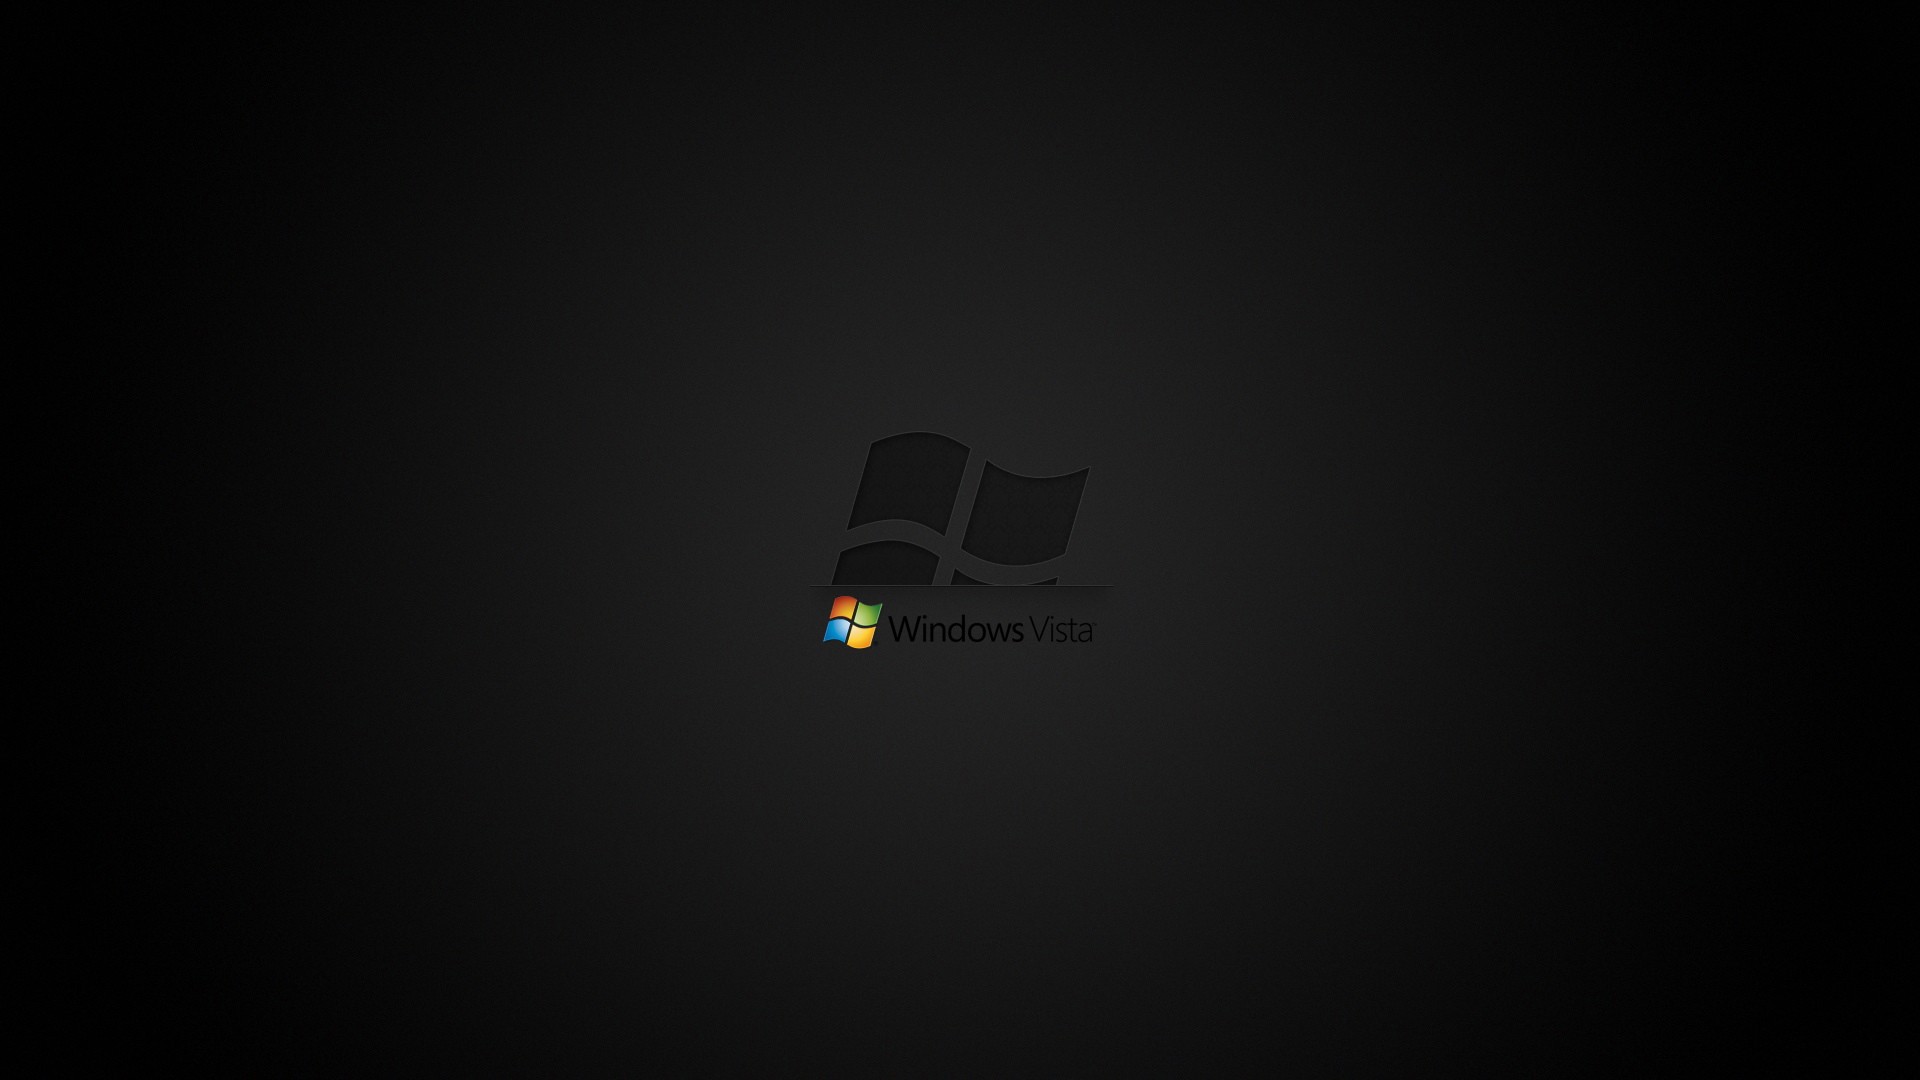 Windows Vista Wallpaper Logos